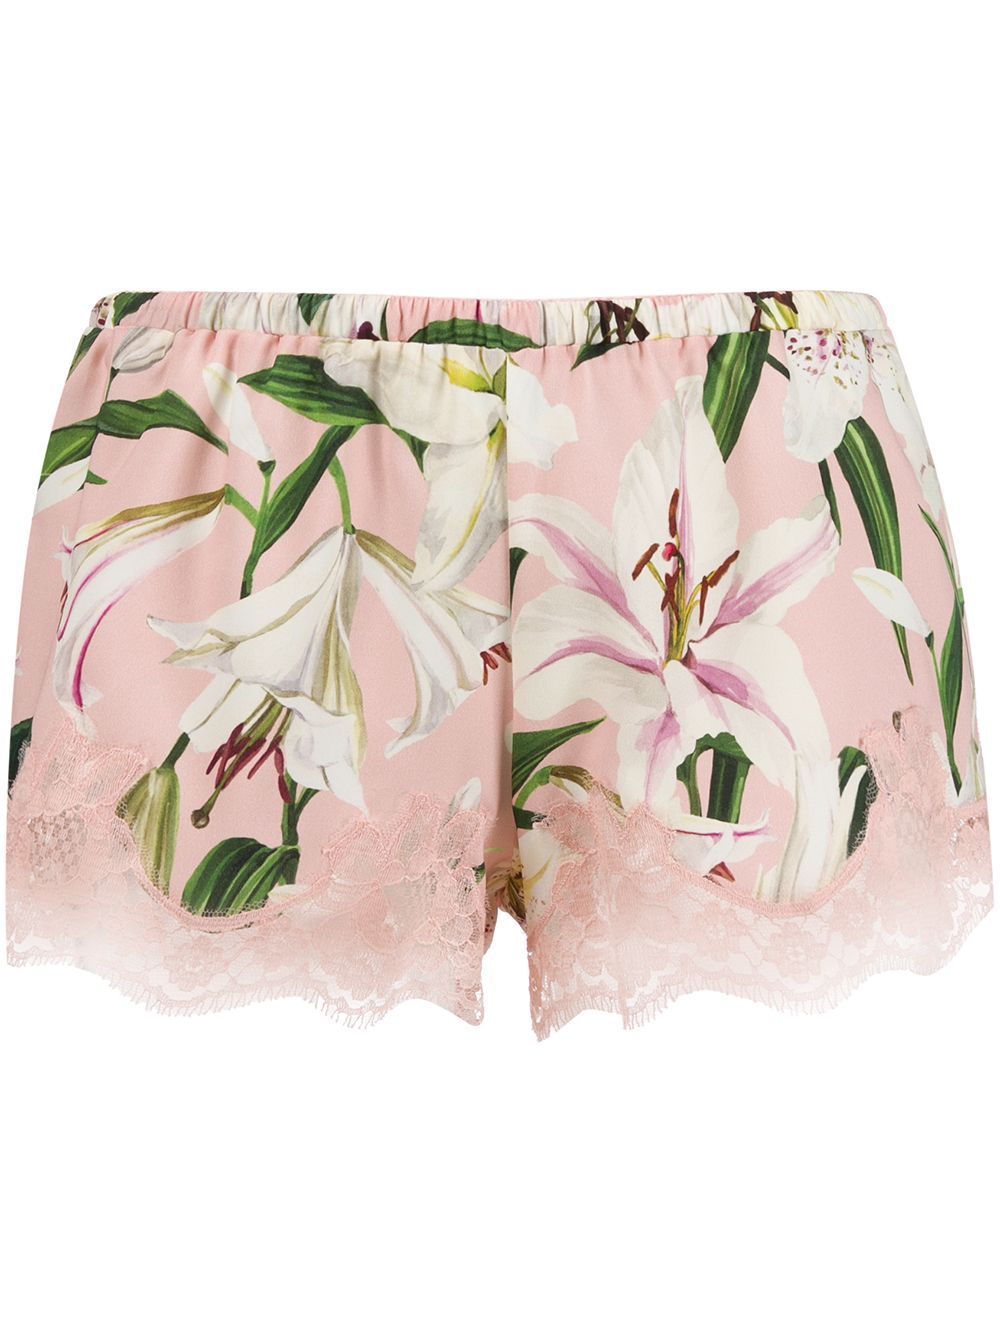 фото Dolce & gabbana underwear шорты с цветочным принтом